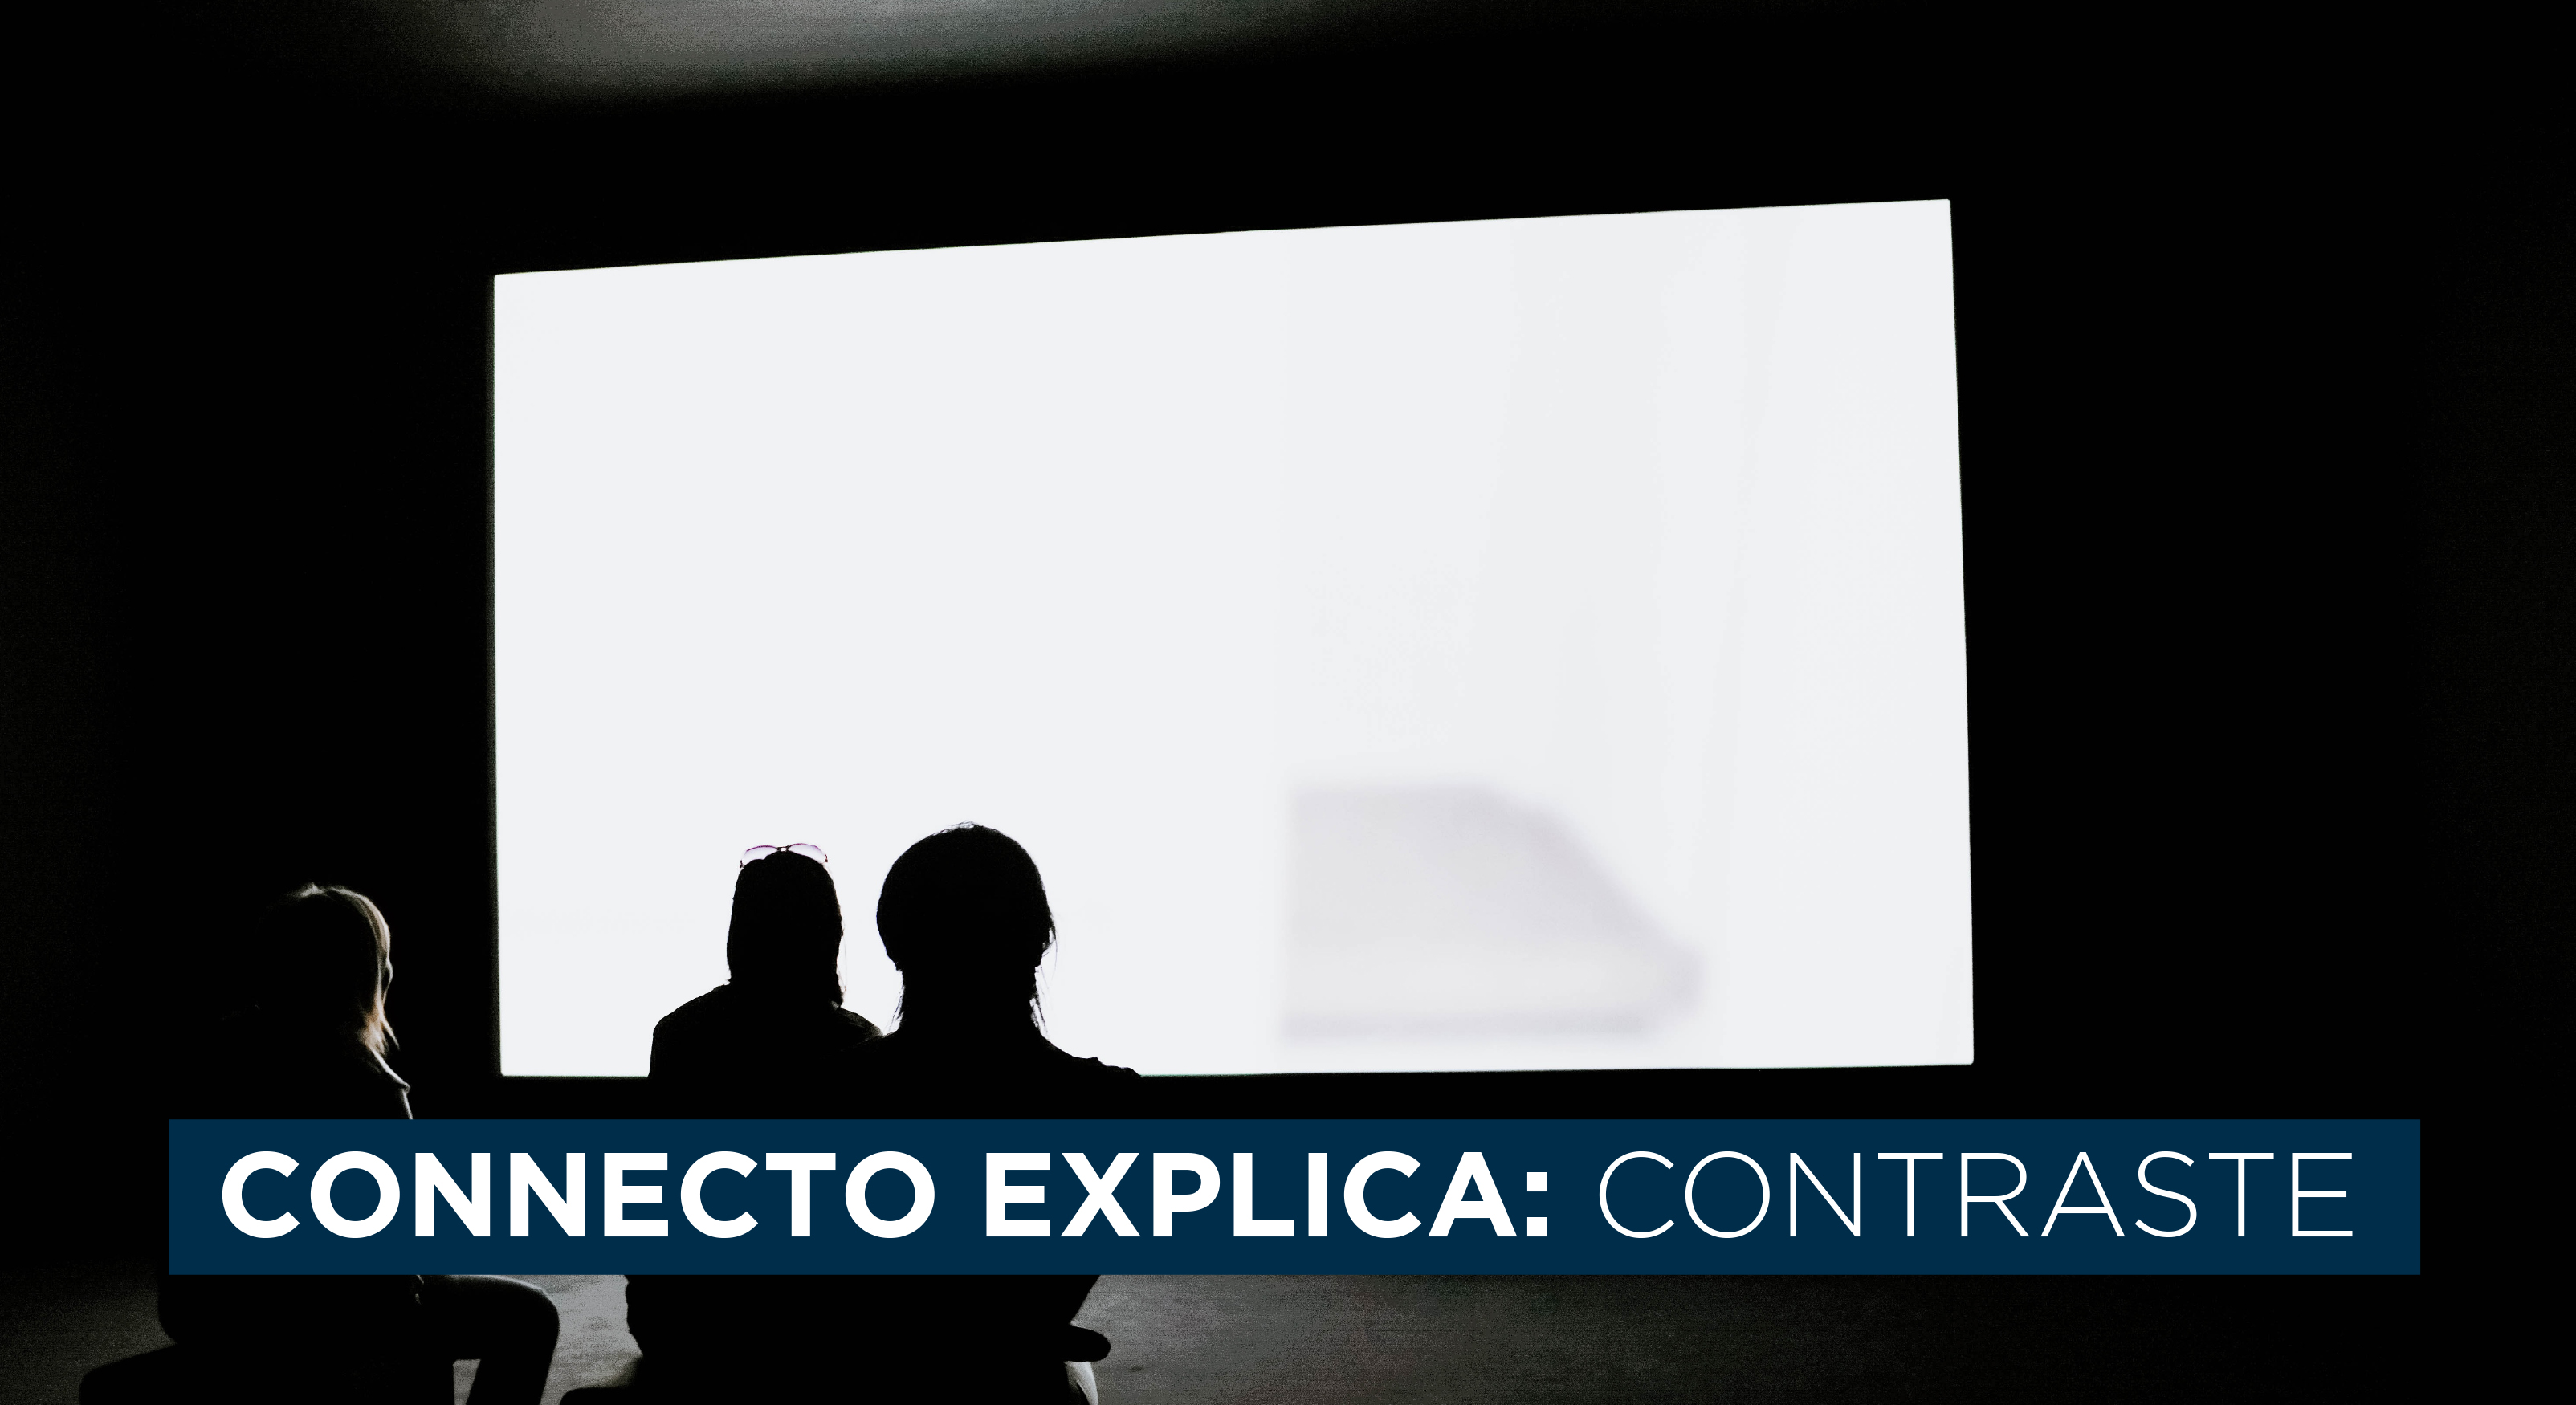 Connecto explica - Contraste: